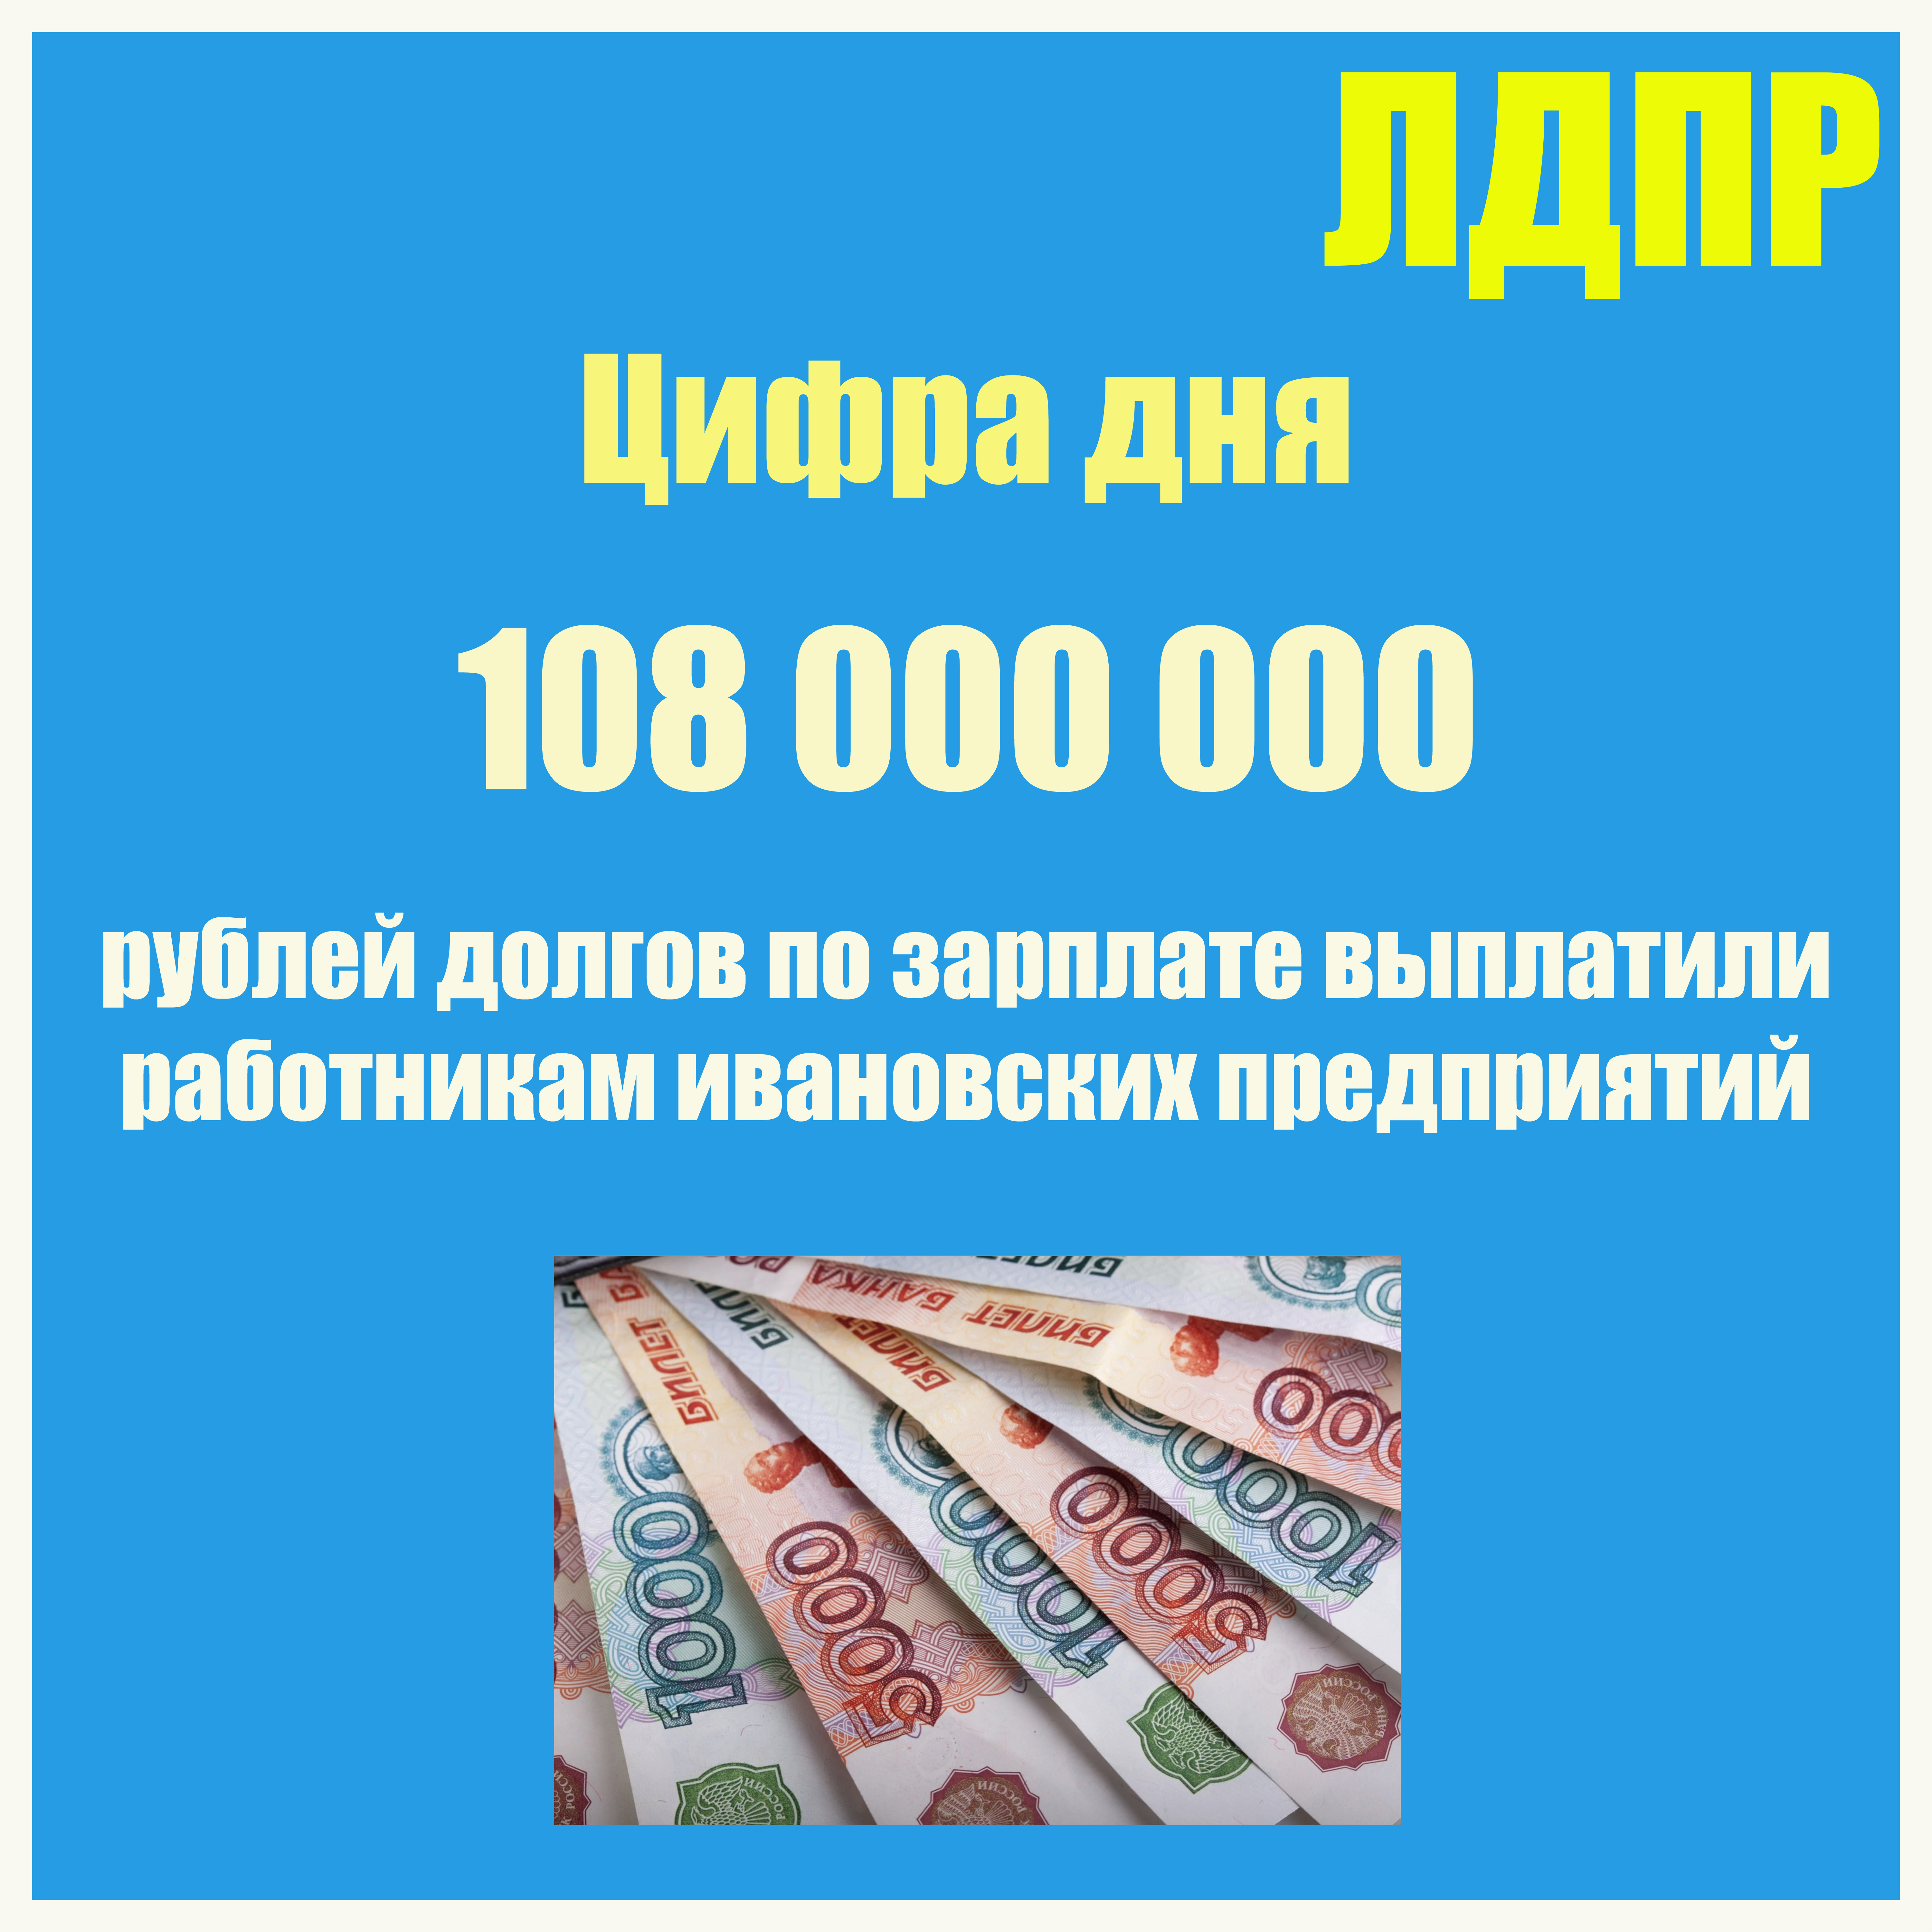 Взять 1 миллион рублей в долг. 108 Миллионов. Работа картинки.